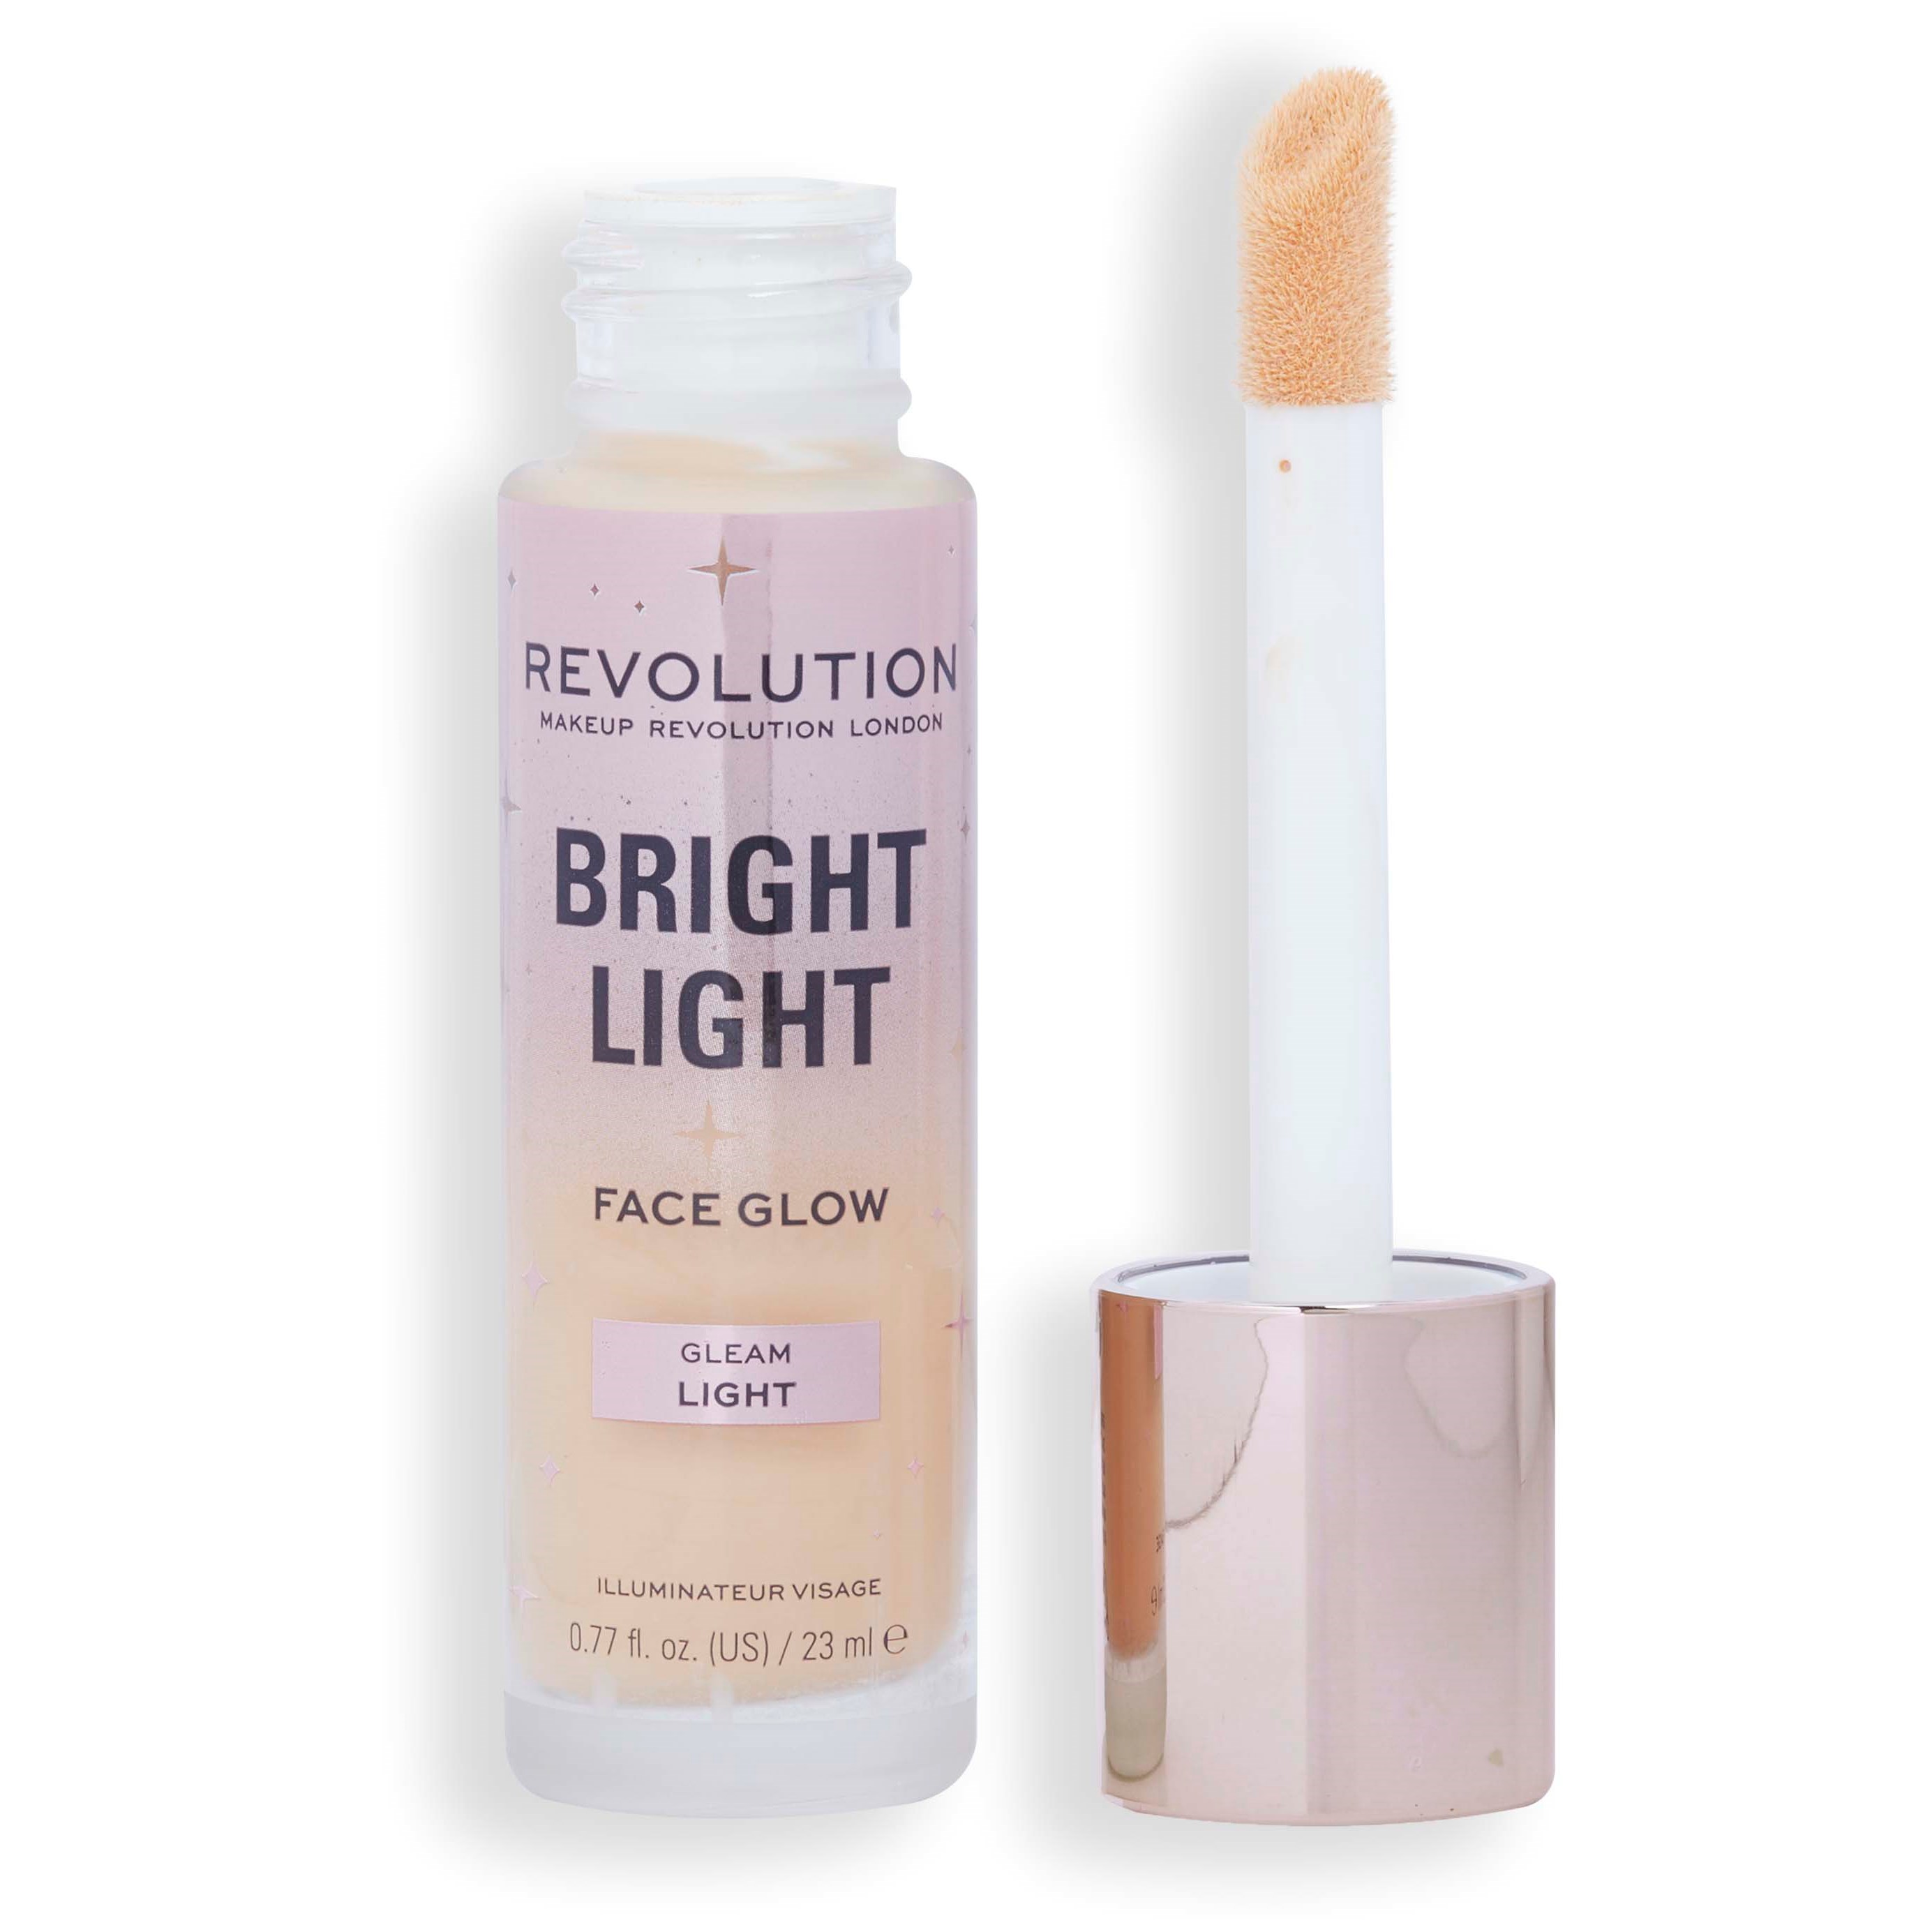 Läs mer om Makeup Revolution Bright Light Face Glow Gleam Light